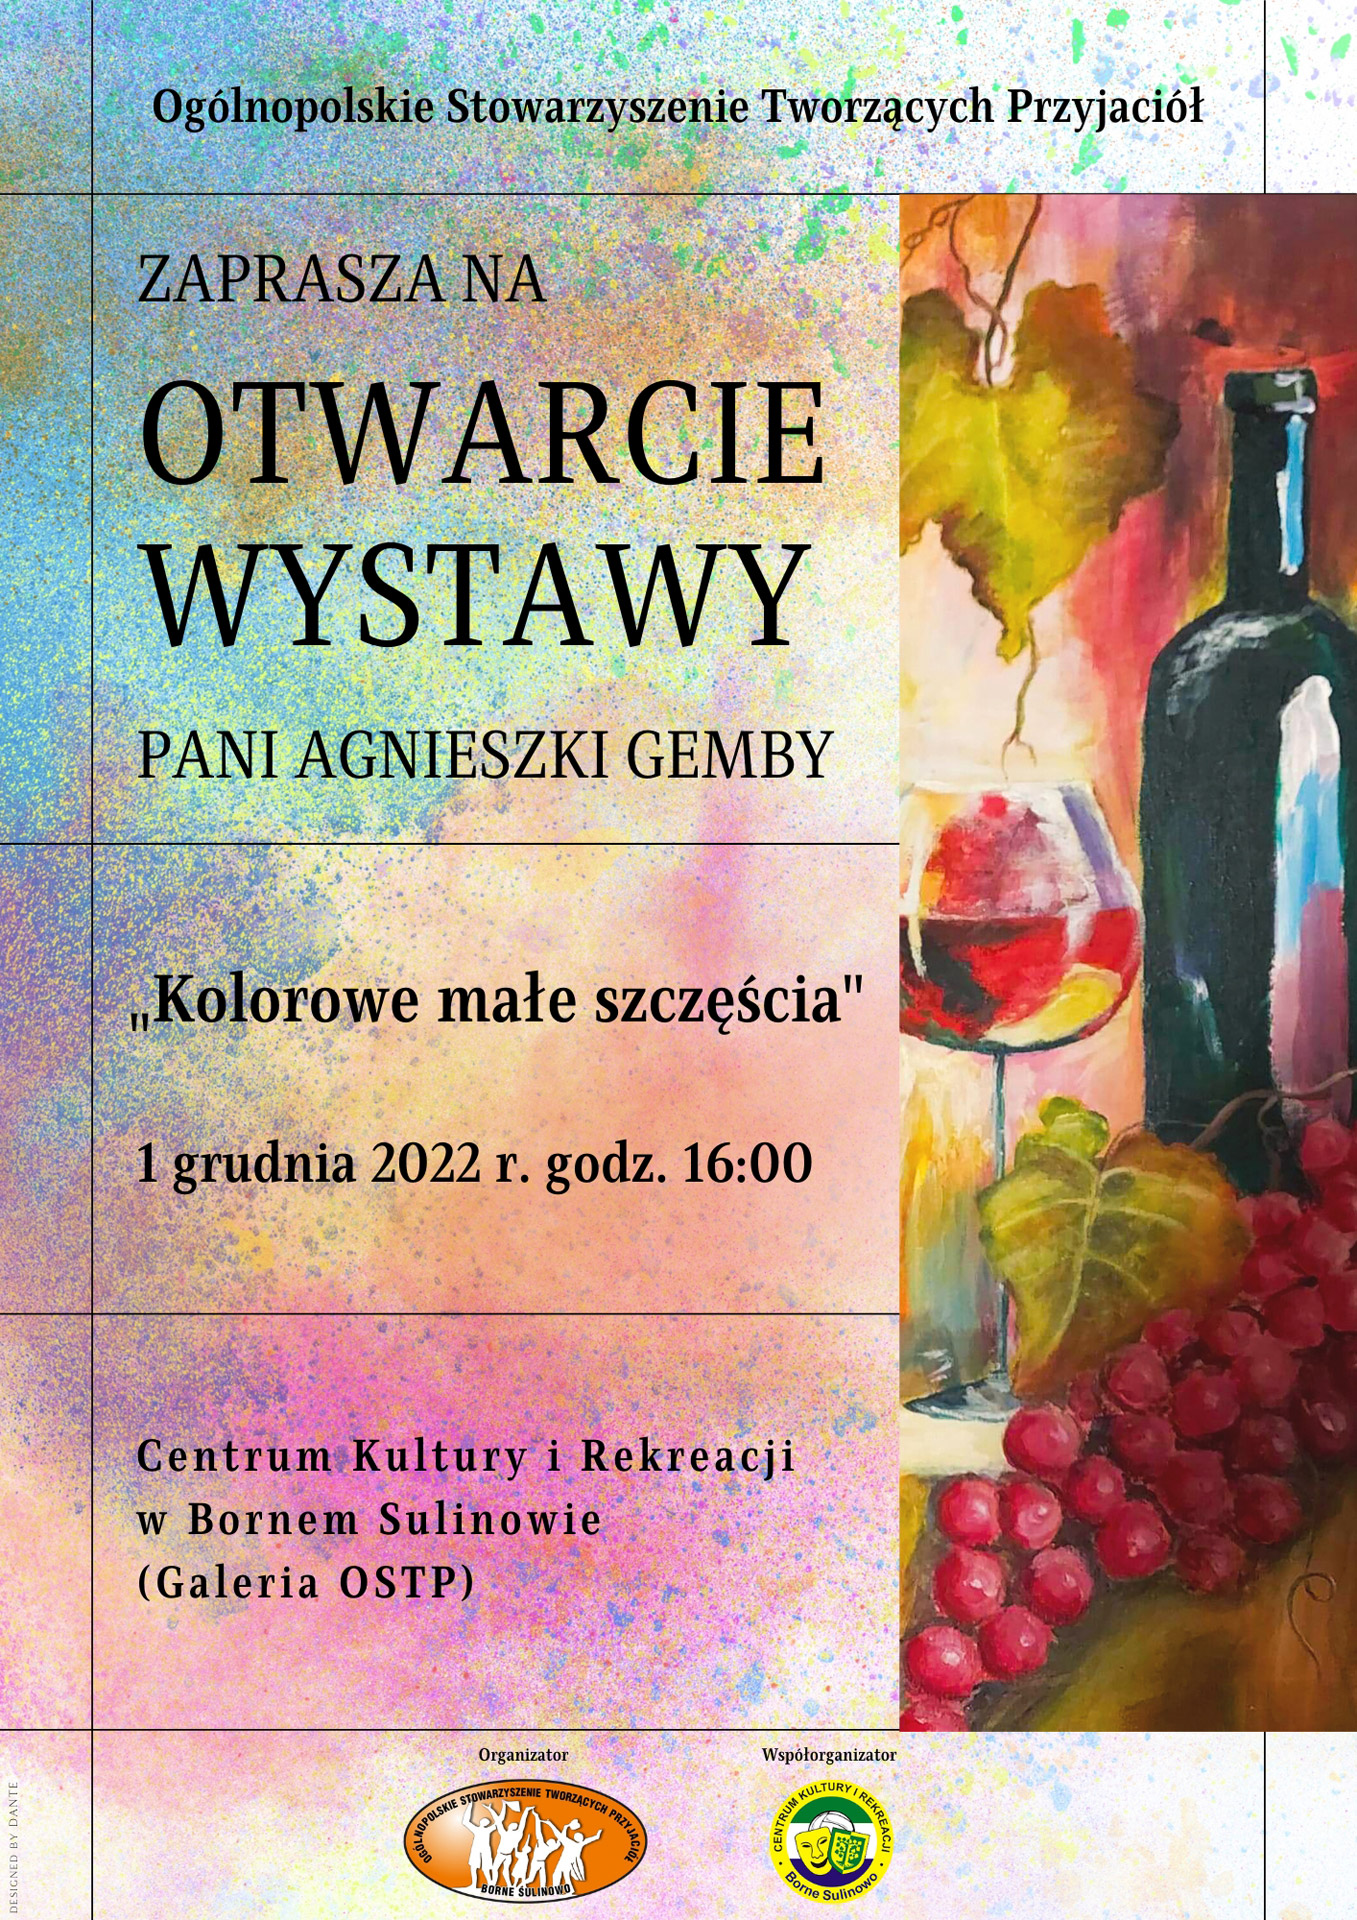 OSTP zaprasza na otwarcie wystawy Pani Agnieszki Gemby "Kolorowe małe szczęścia" które odbędzie się w dniu 1 grudnia o godz. 16.00 w CKiR Borne Sulinowo